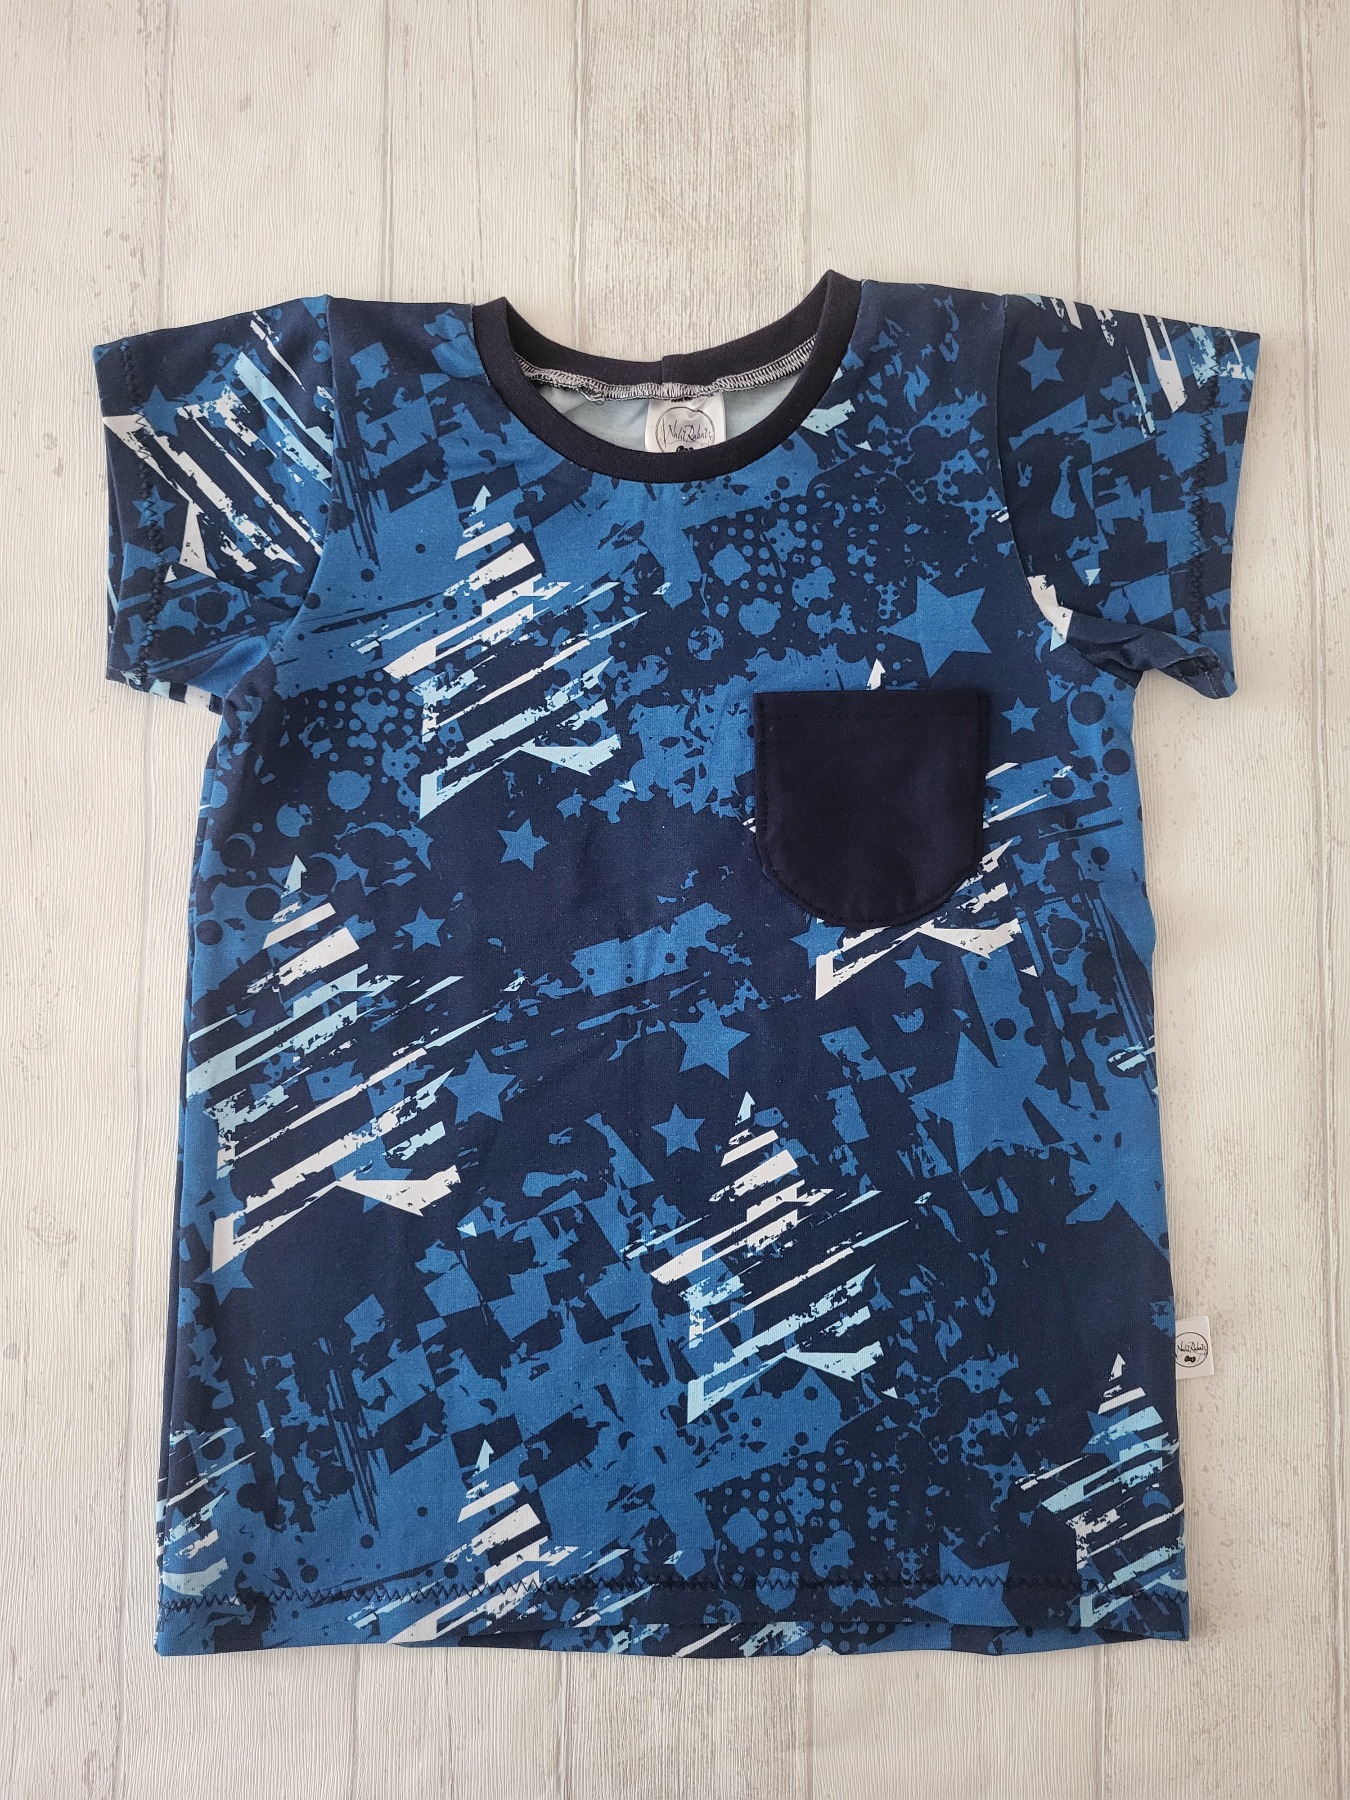 Sofortkauf Handmade T-Shirt kurzarm Sterne blau Gr. 134 von NahtRabatz